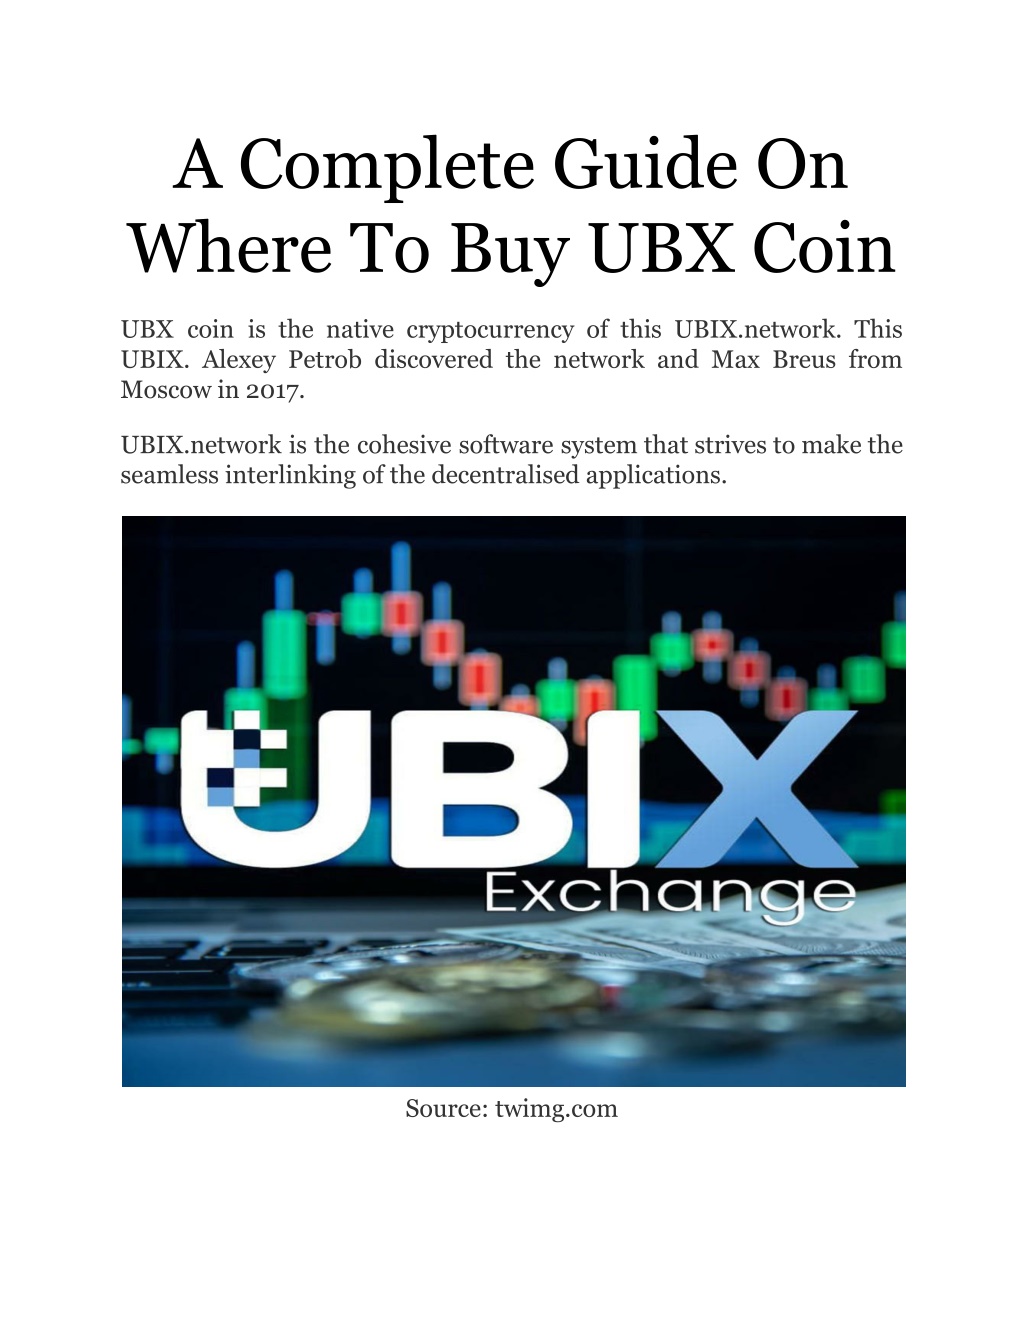 how to buy ubx crypto